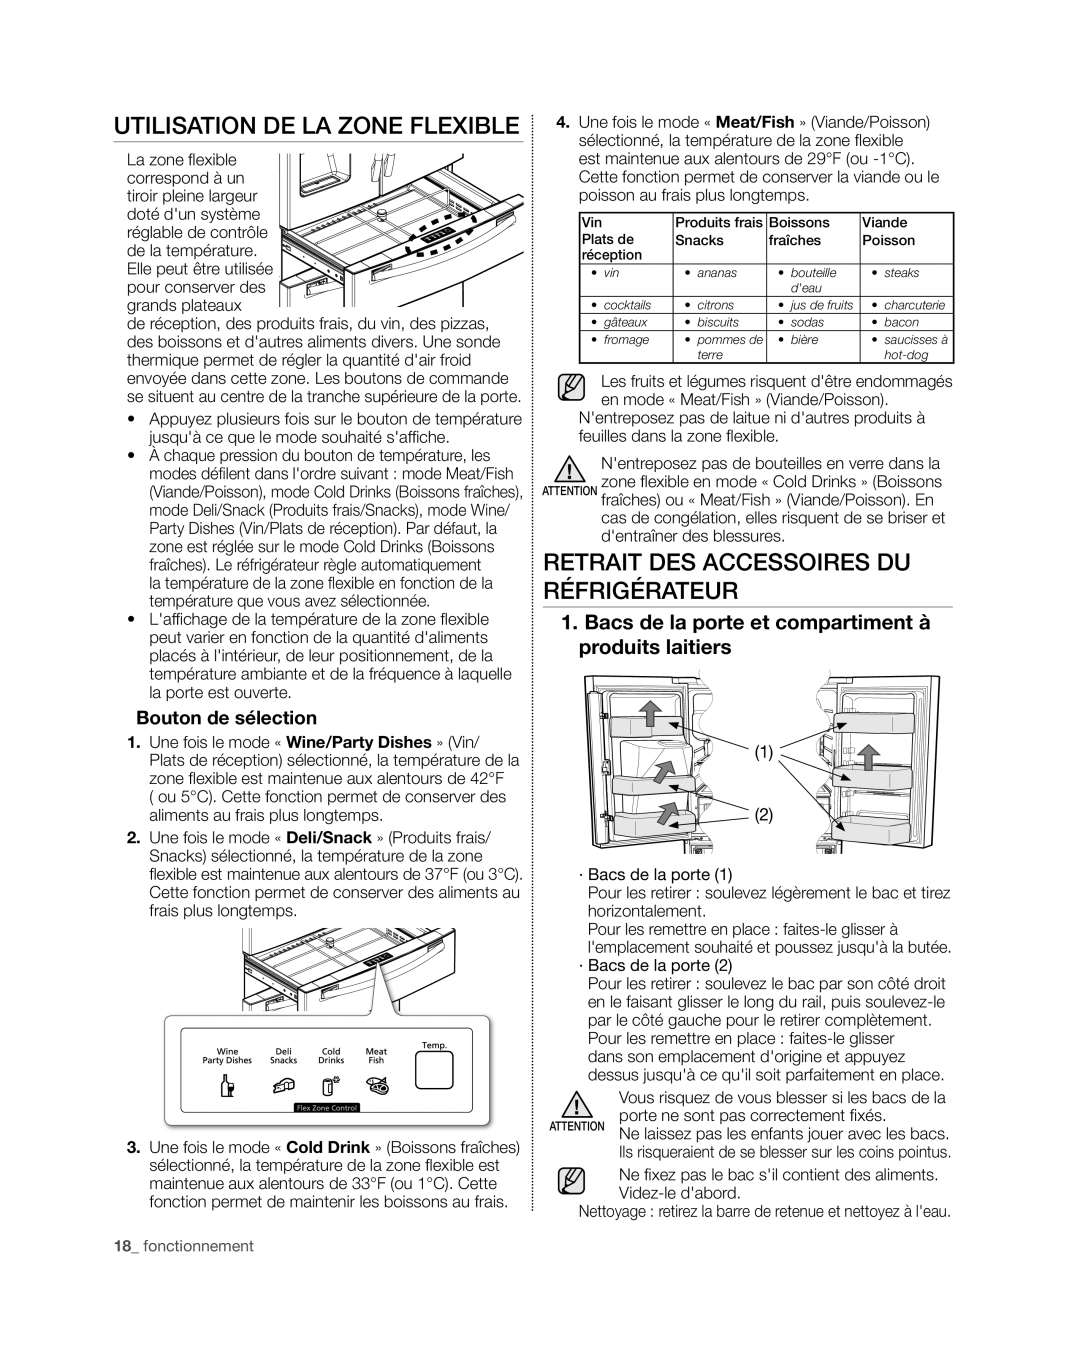 Samsung RF4267HA user manual Utilisation de la zone flexible, Retrait des accessoires du réfrigérateur, Bouton de sélection 